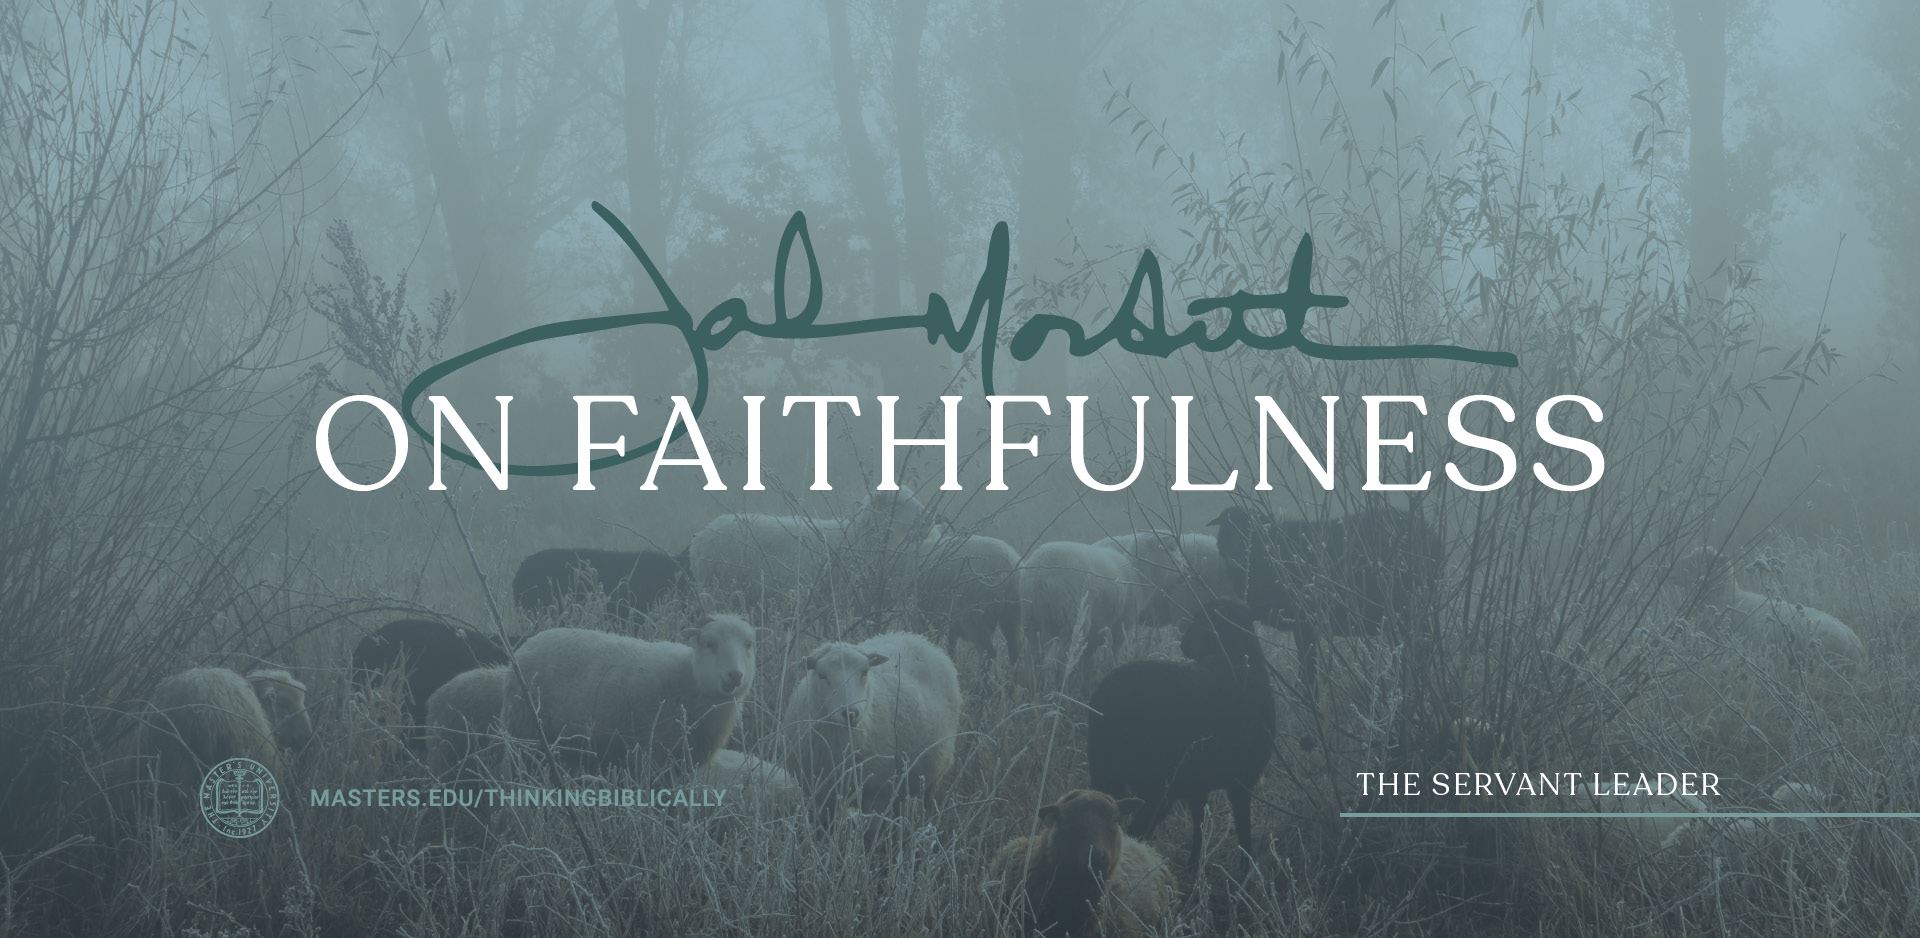 John MacArthur on Faithfulness